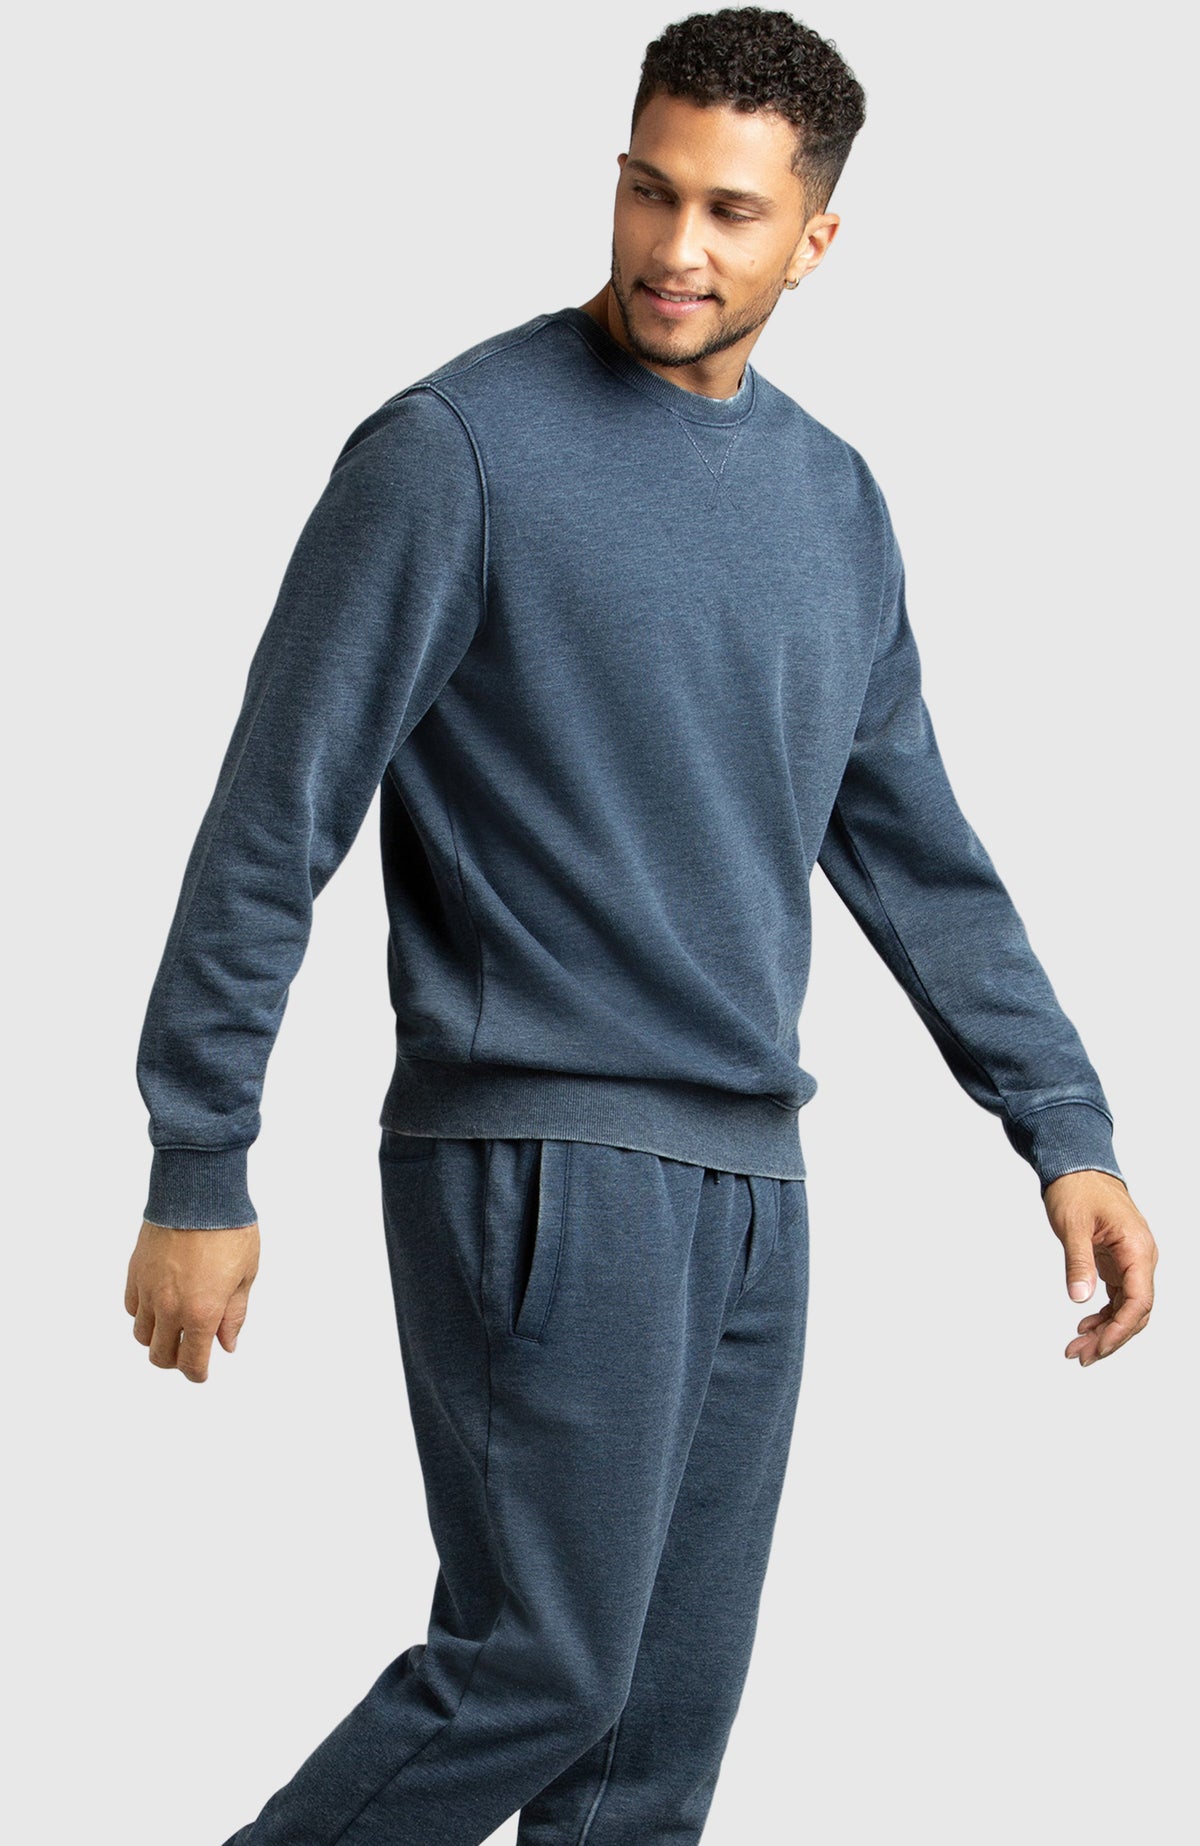 Navy Blue Fleece Crewneck Sweatshirt for Men - Side